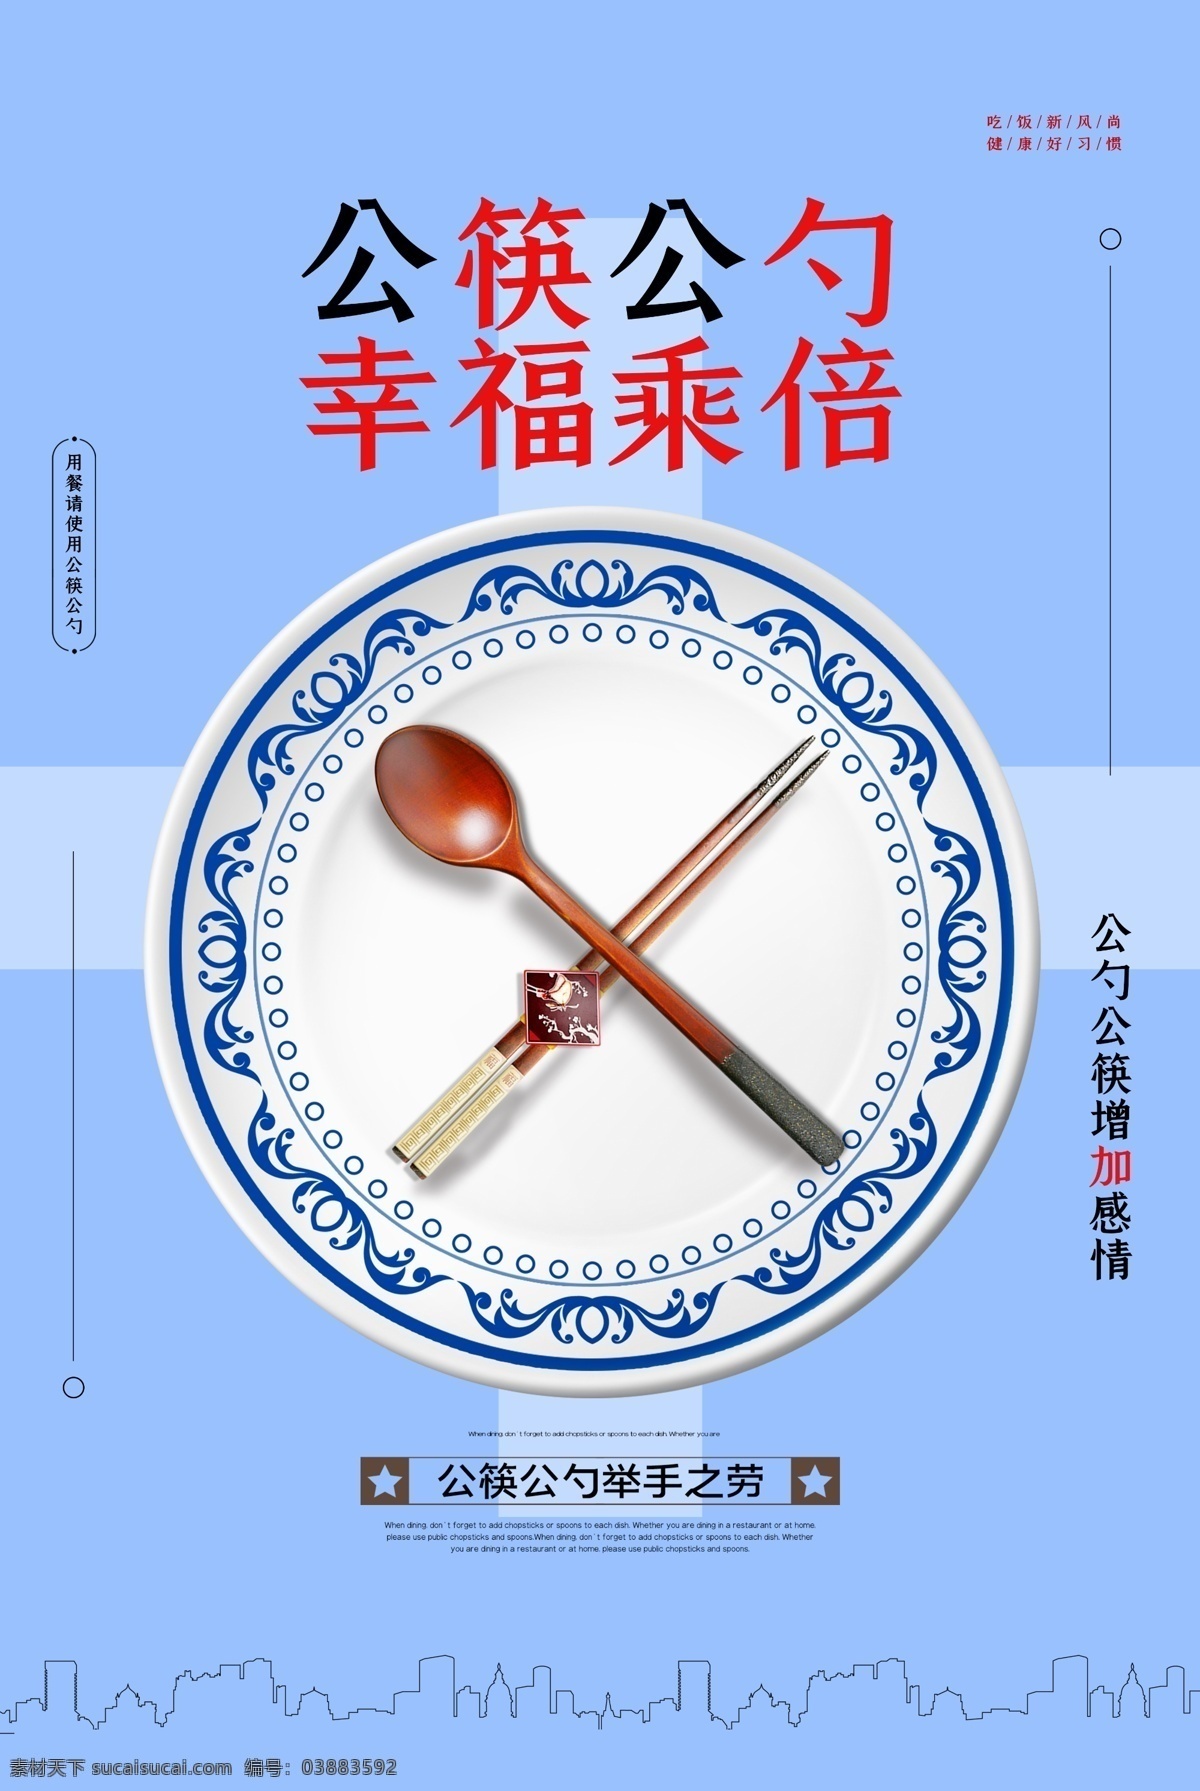 公勺公筷 餐桌文明 公勺 公筷 餐桌 文明 餐桌文化